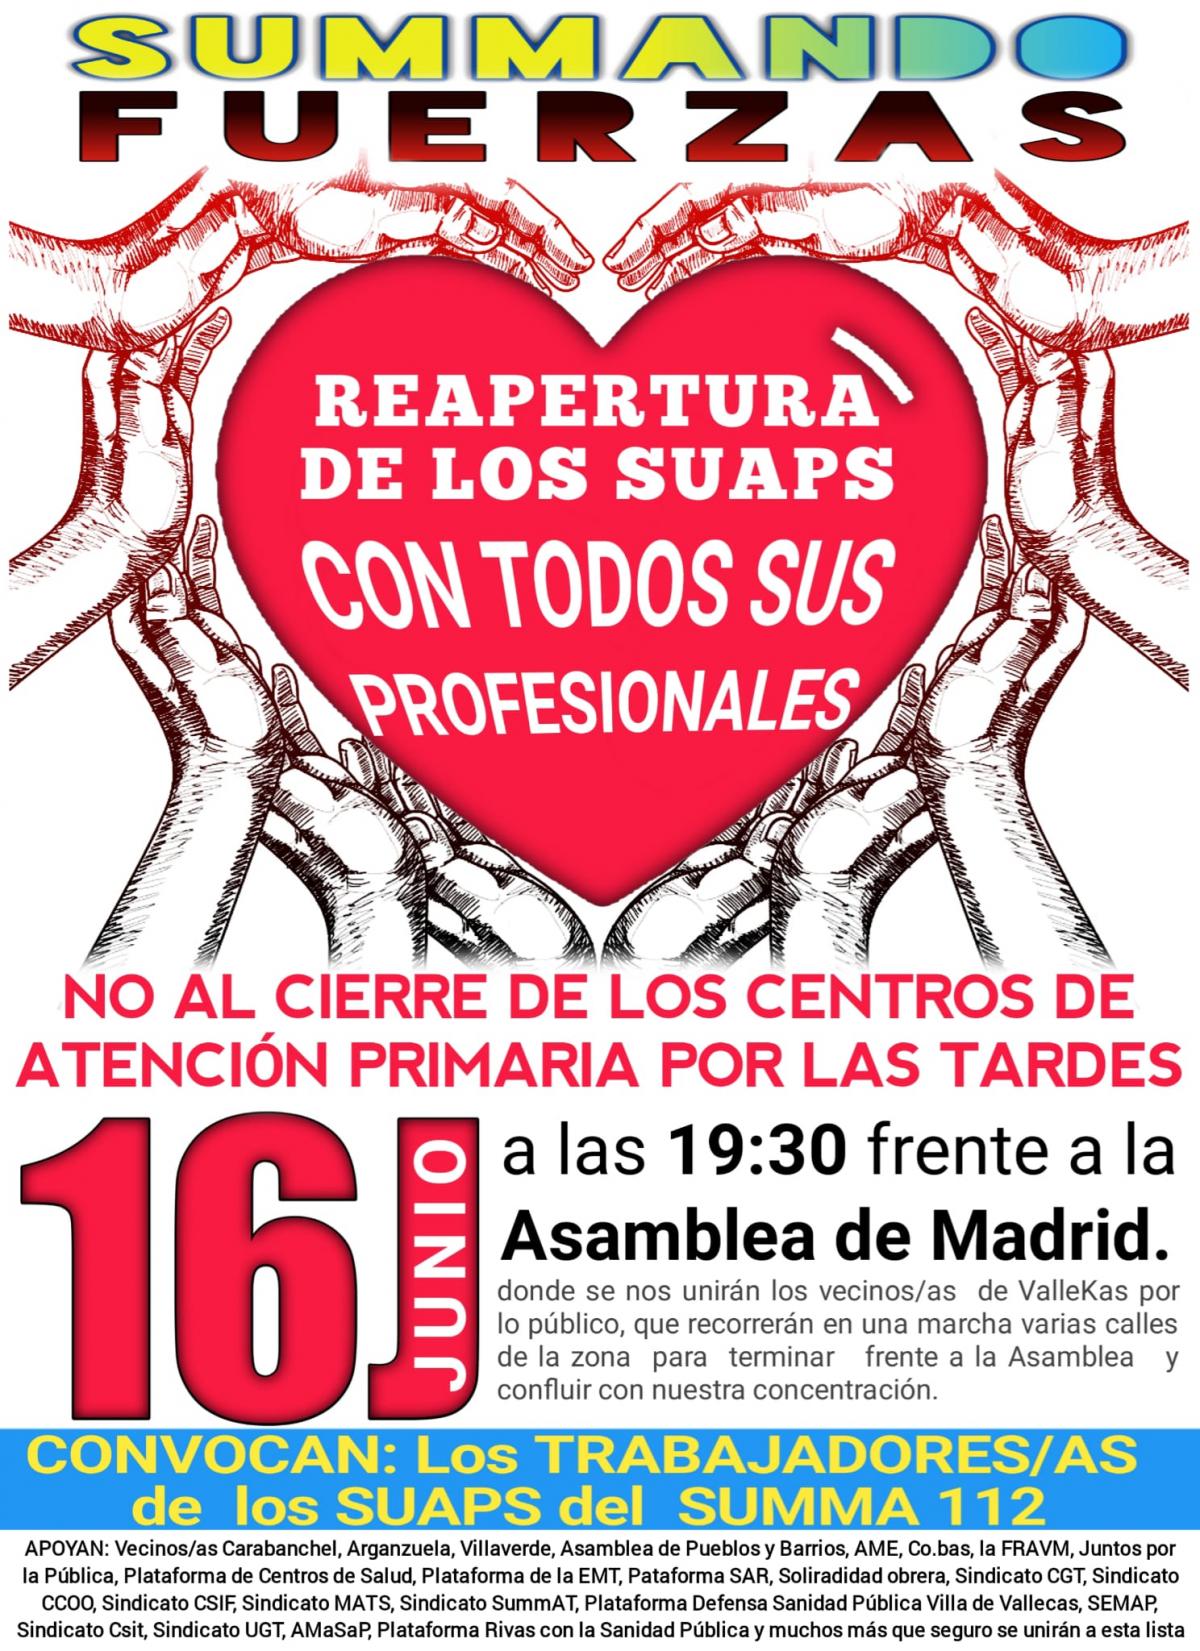 Manifestación frente a la Asamblea de Madrid 16 de junio, 19:30 horas.